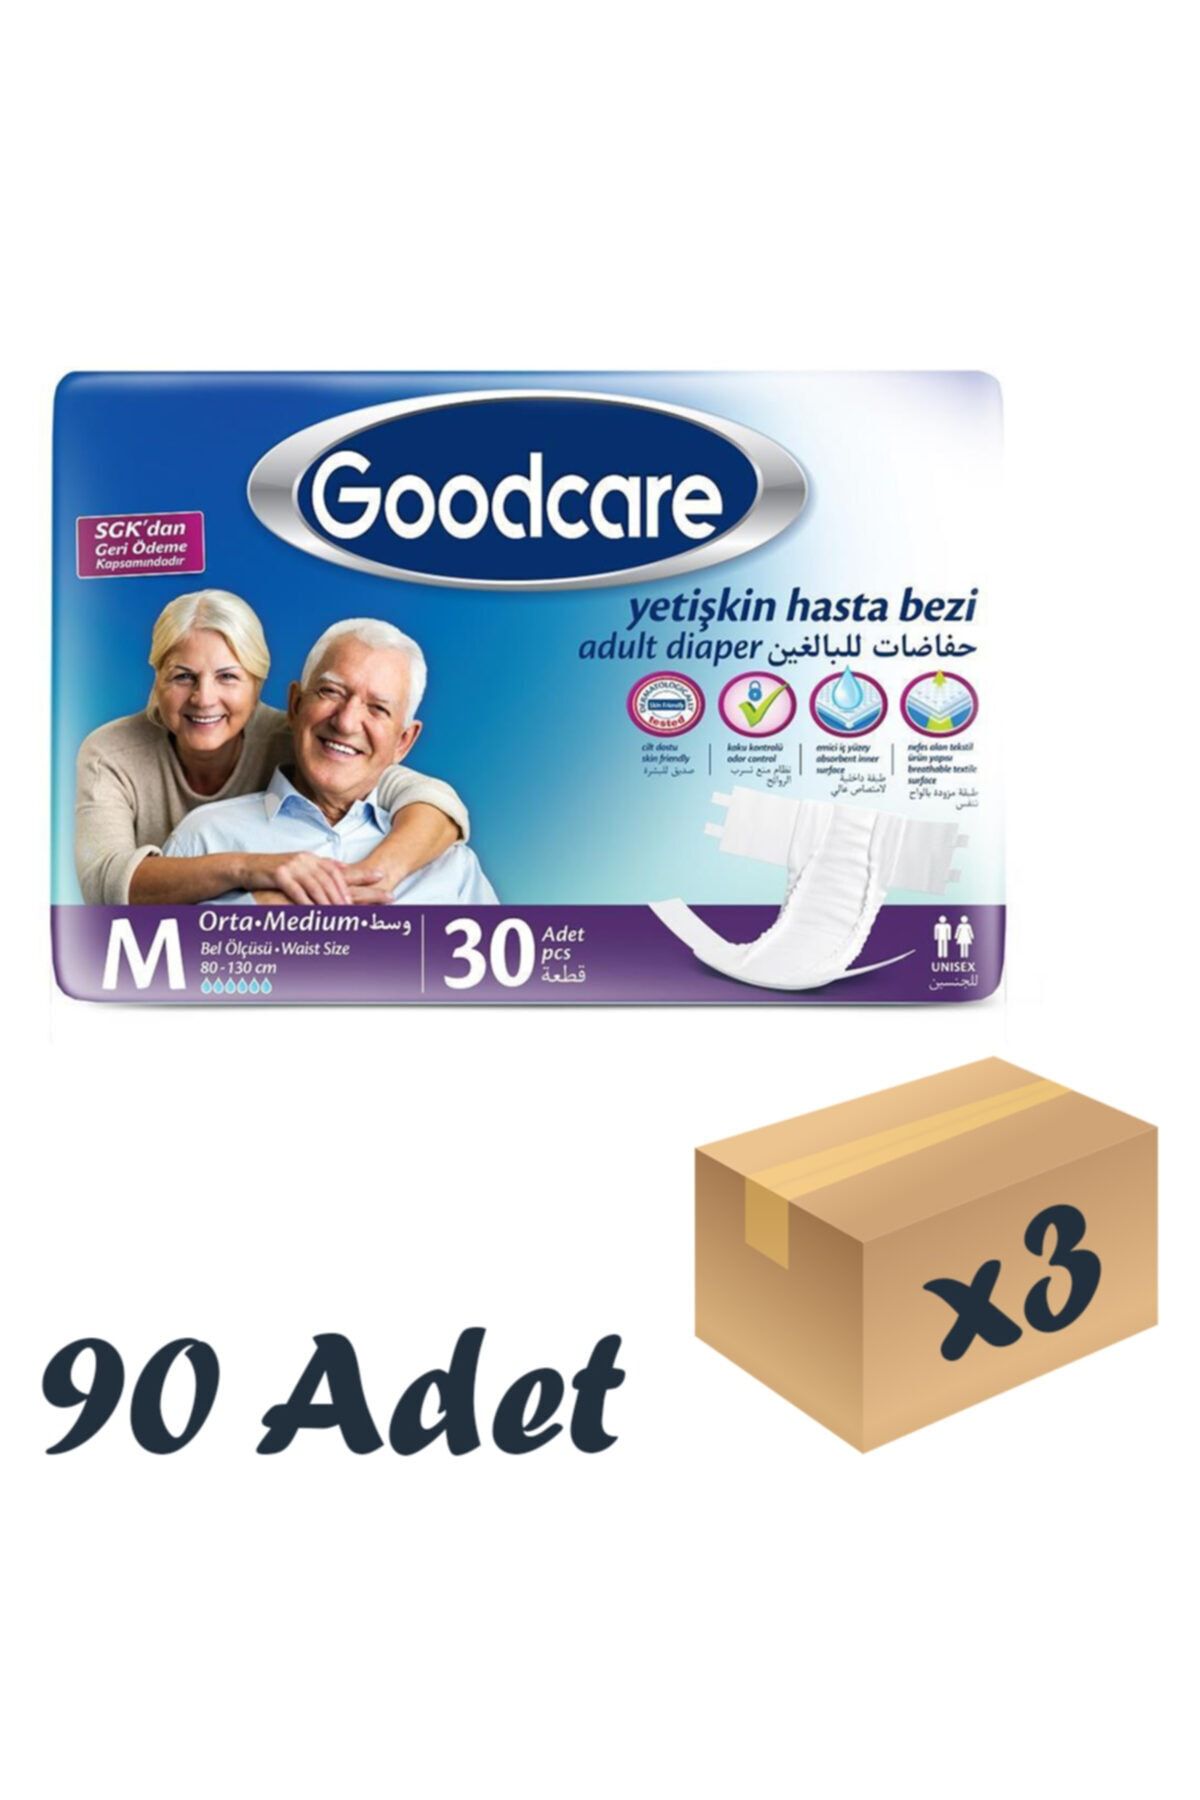 Goodcare Bel Bantlı Yetişkin Hasta Bezi Medium 30'lu 3 Paket 90 Adet